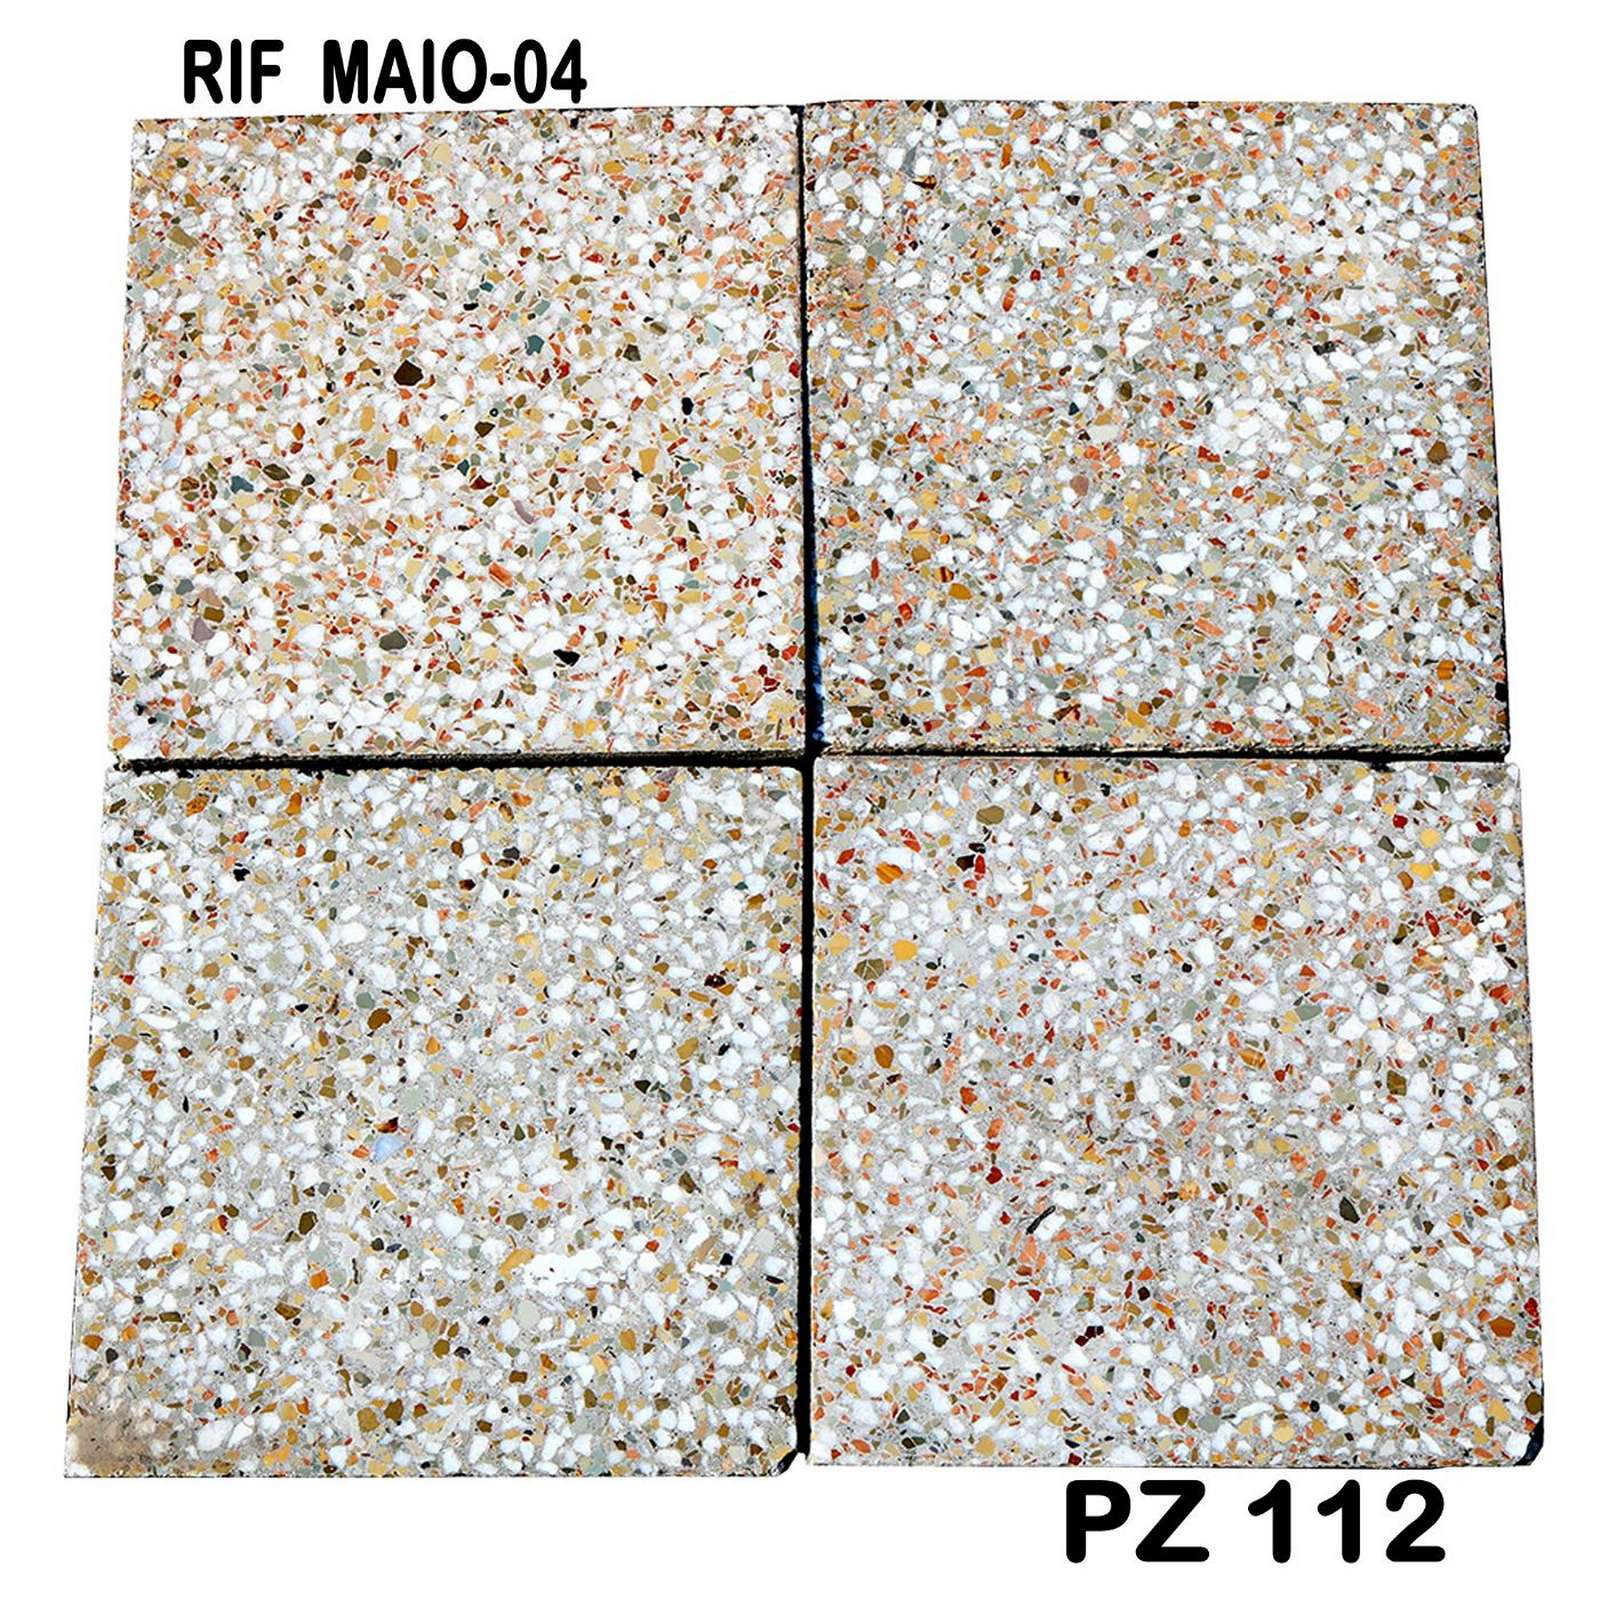 Antica pavimentazione in graniglia. cm.20x20 - Cementine e Graniglie - Pavimentazioni Antiche - Prodotti - Antichità Fiorillo